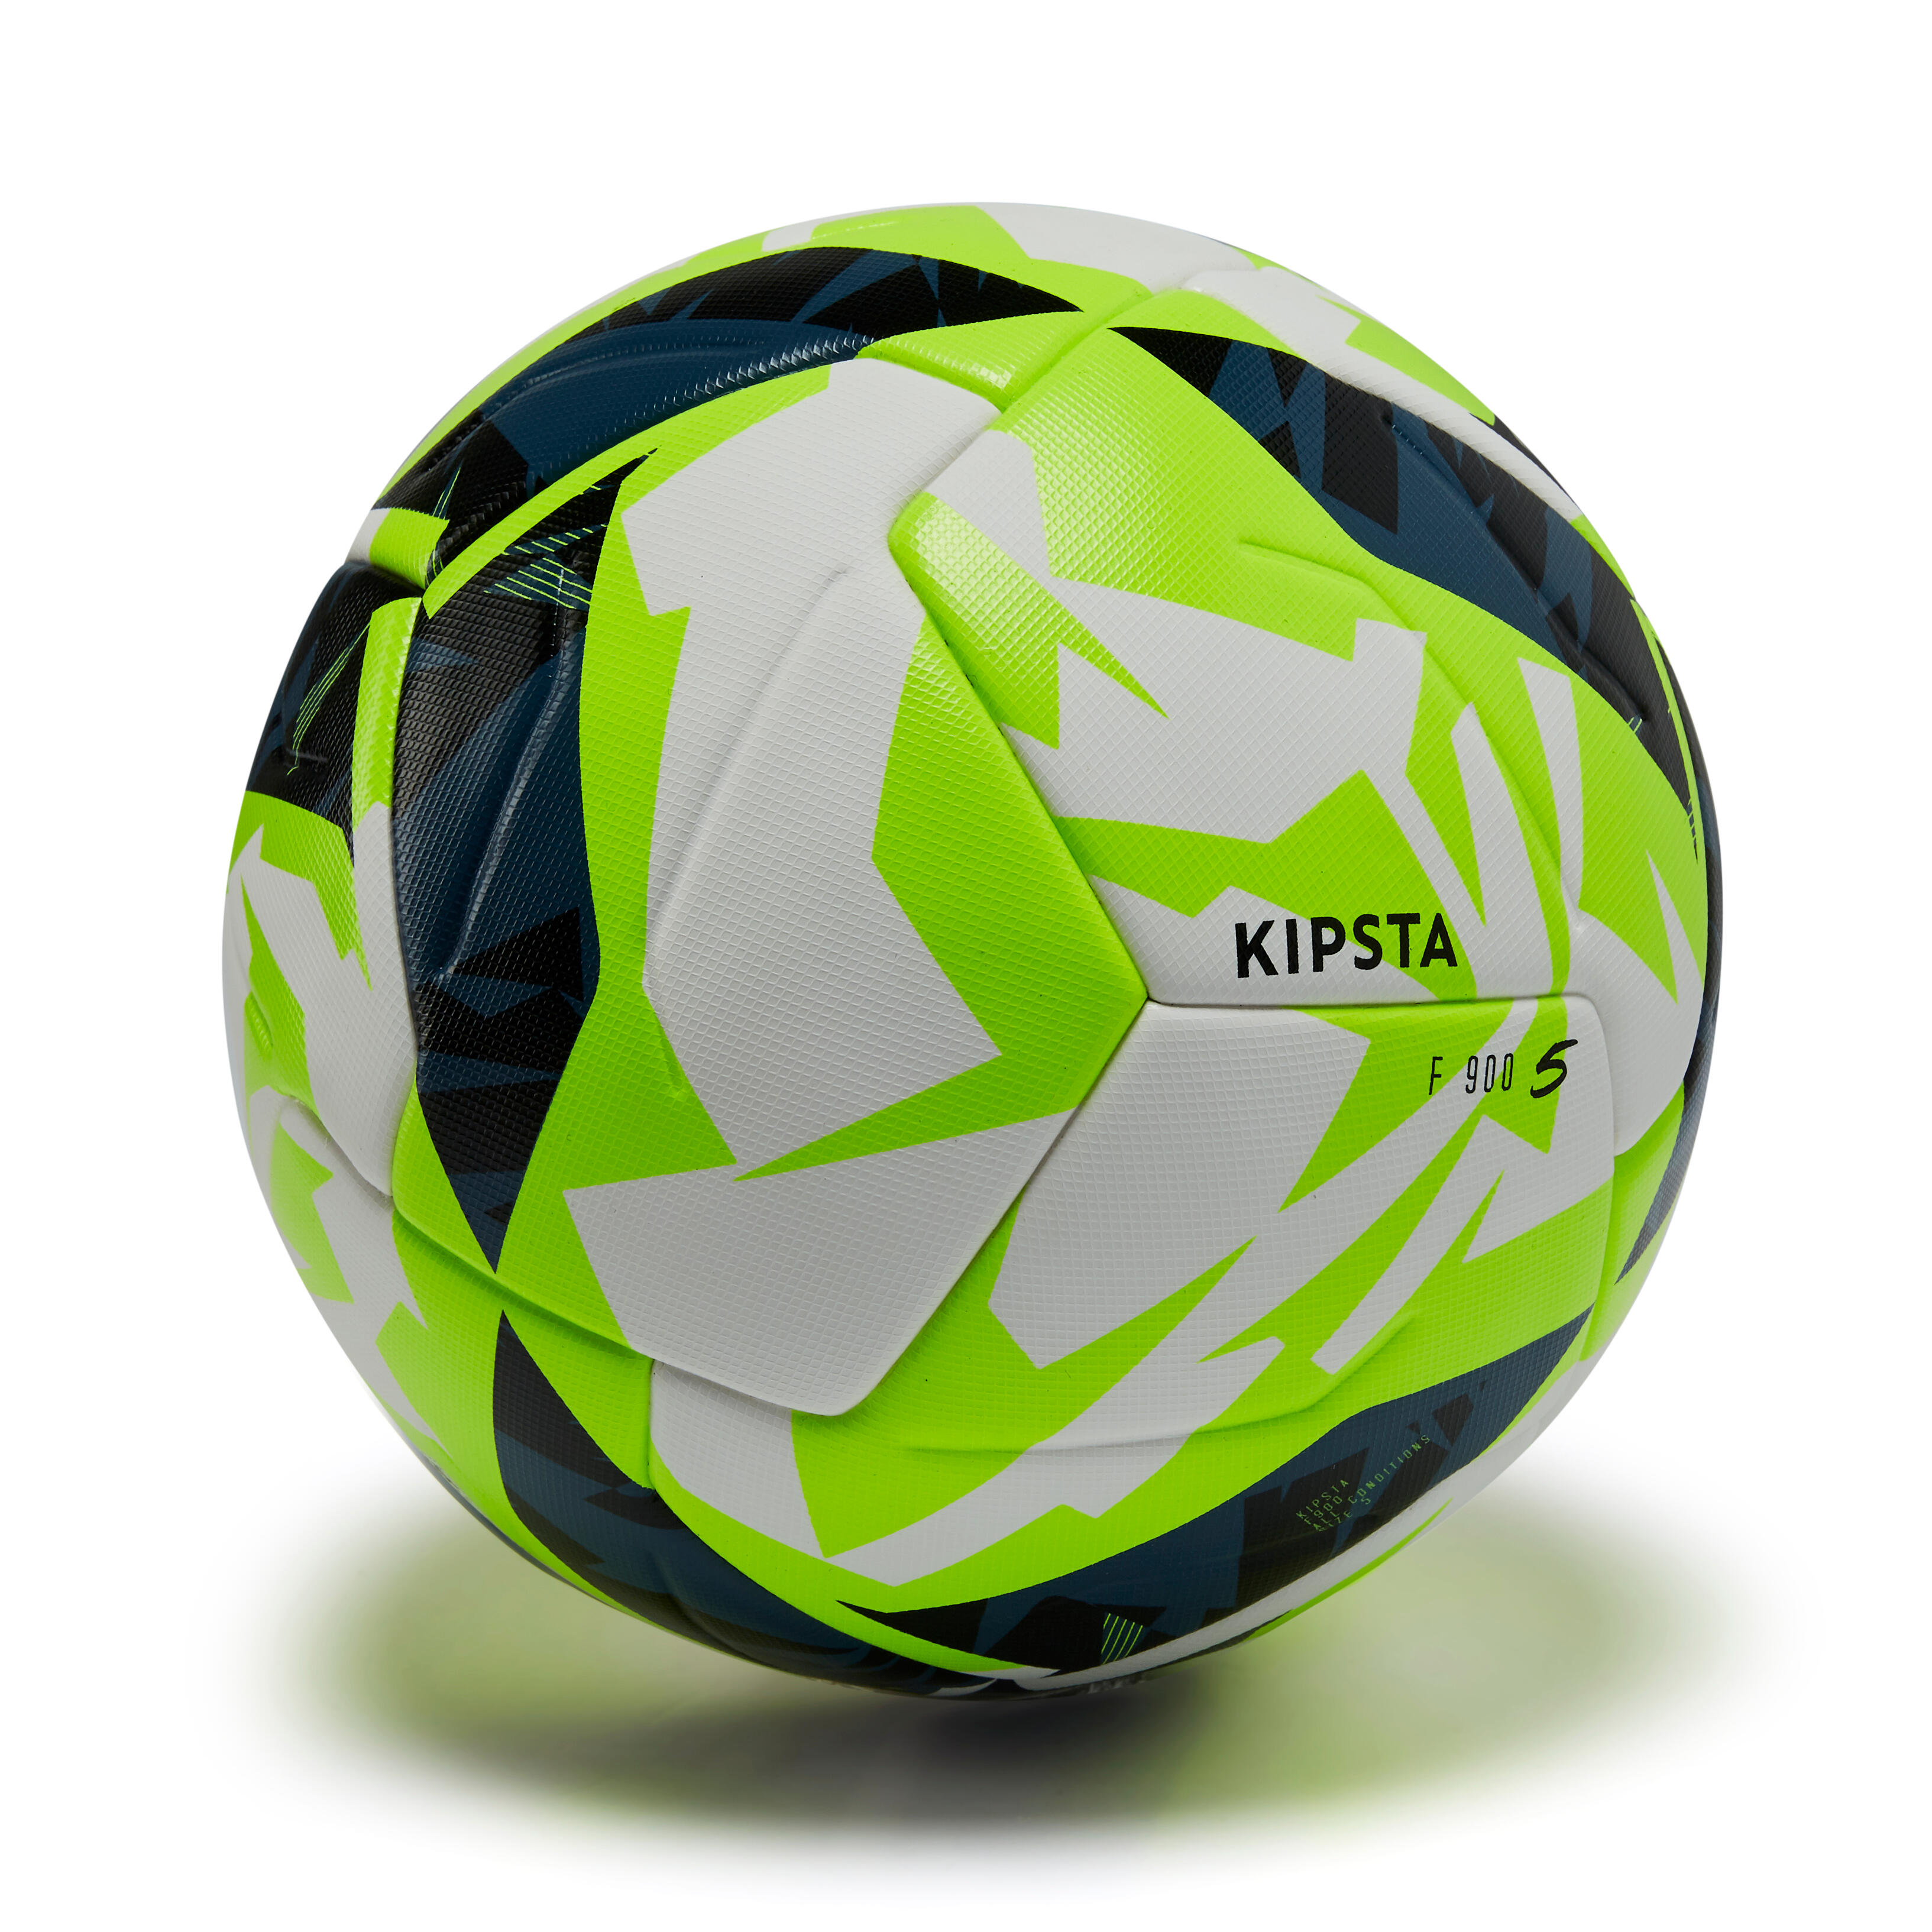 Pallone Calcio F 900 Fifa Quality Pro Taglia 5 Bianco-giallo Kipsta